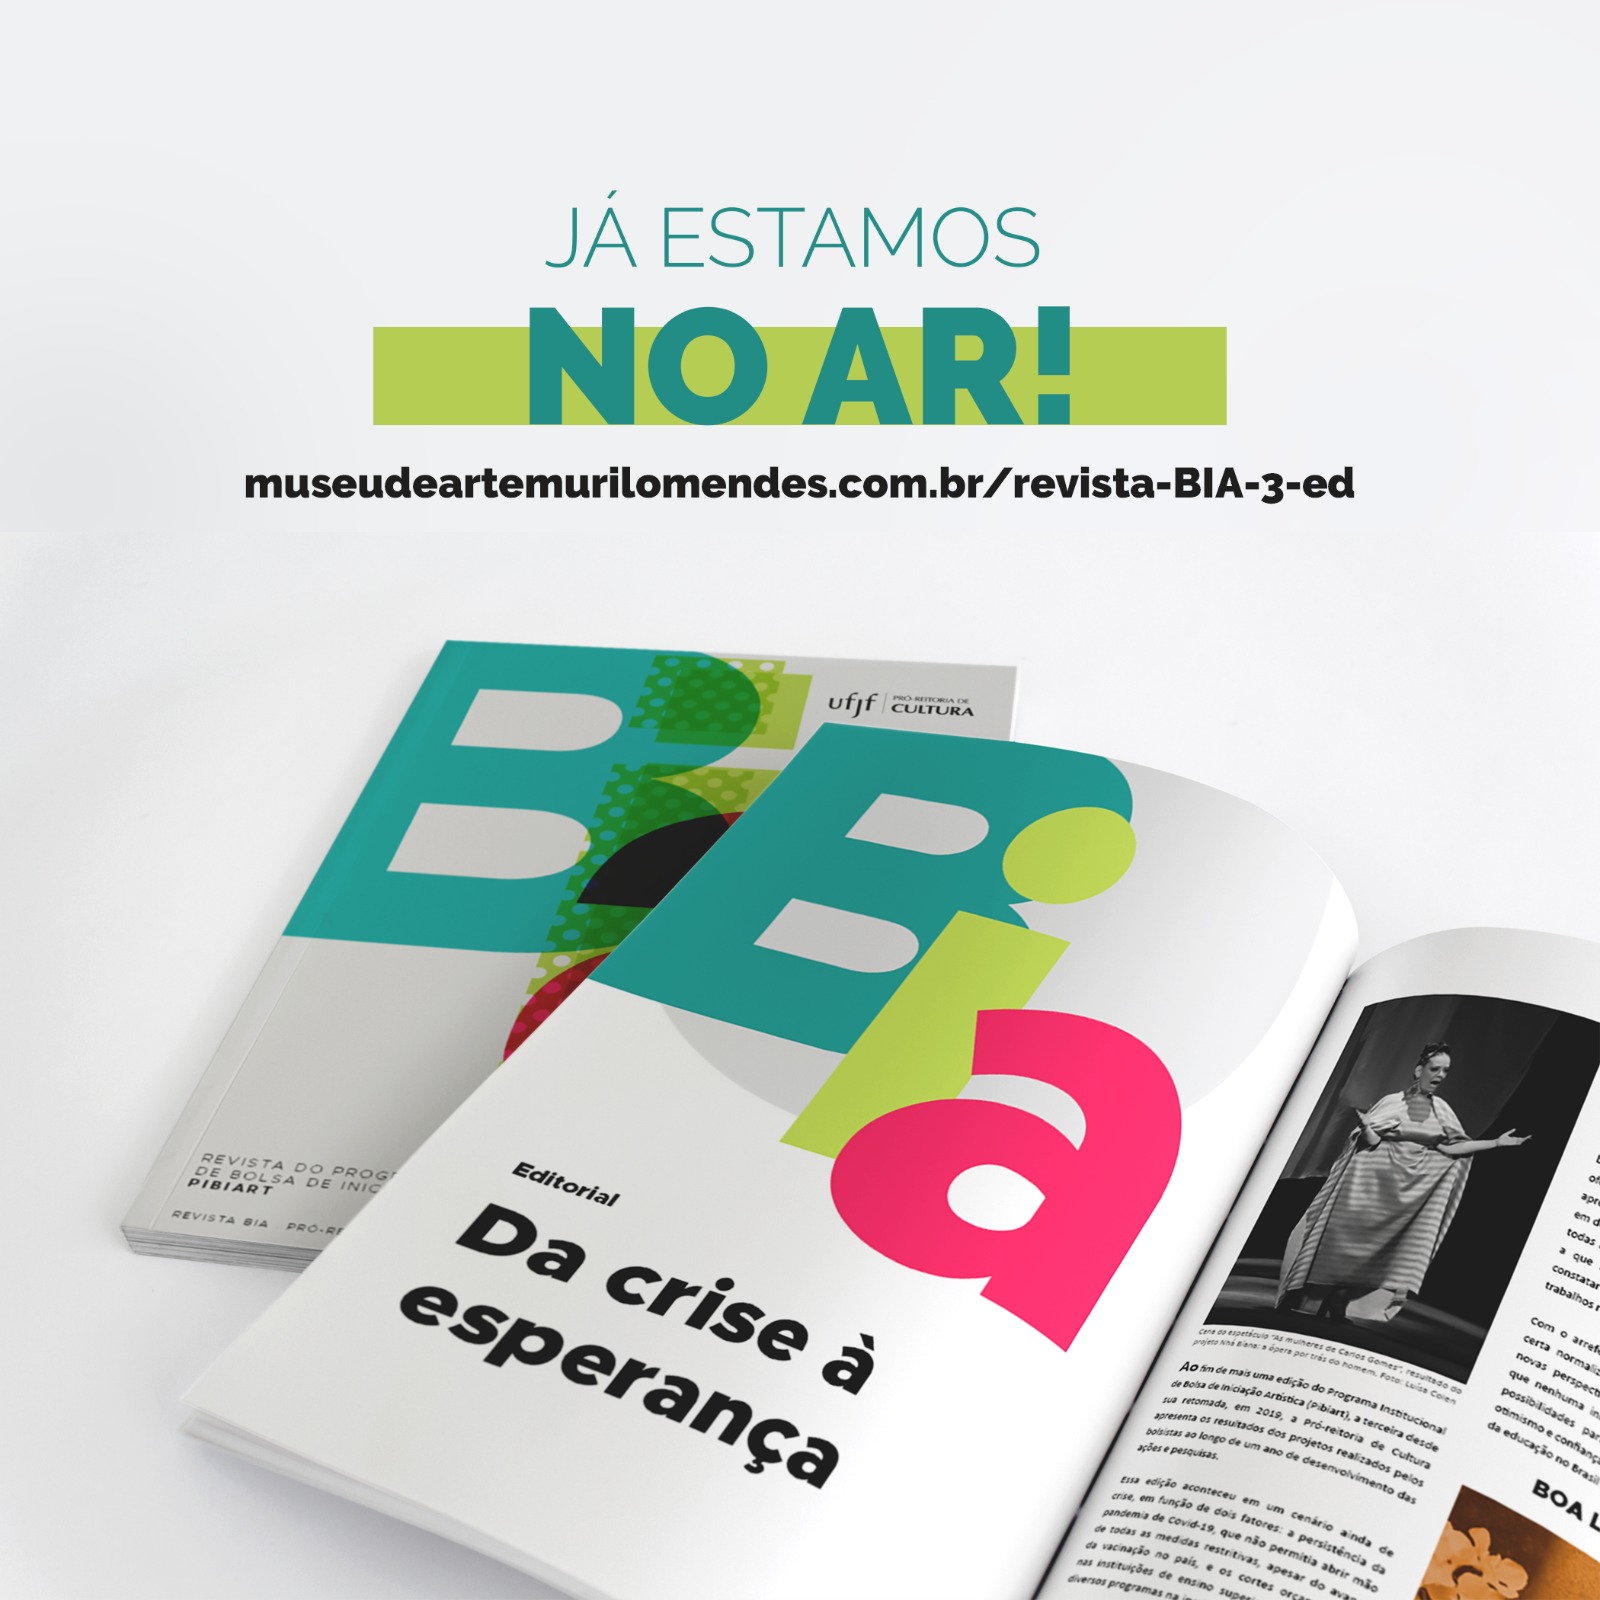 Arte com mockup de revista apresentando a revista Bia, terceira edição.